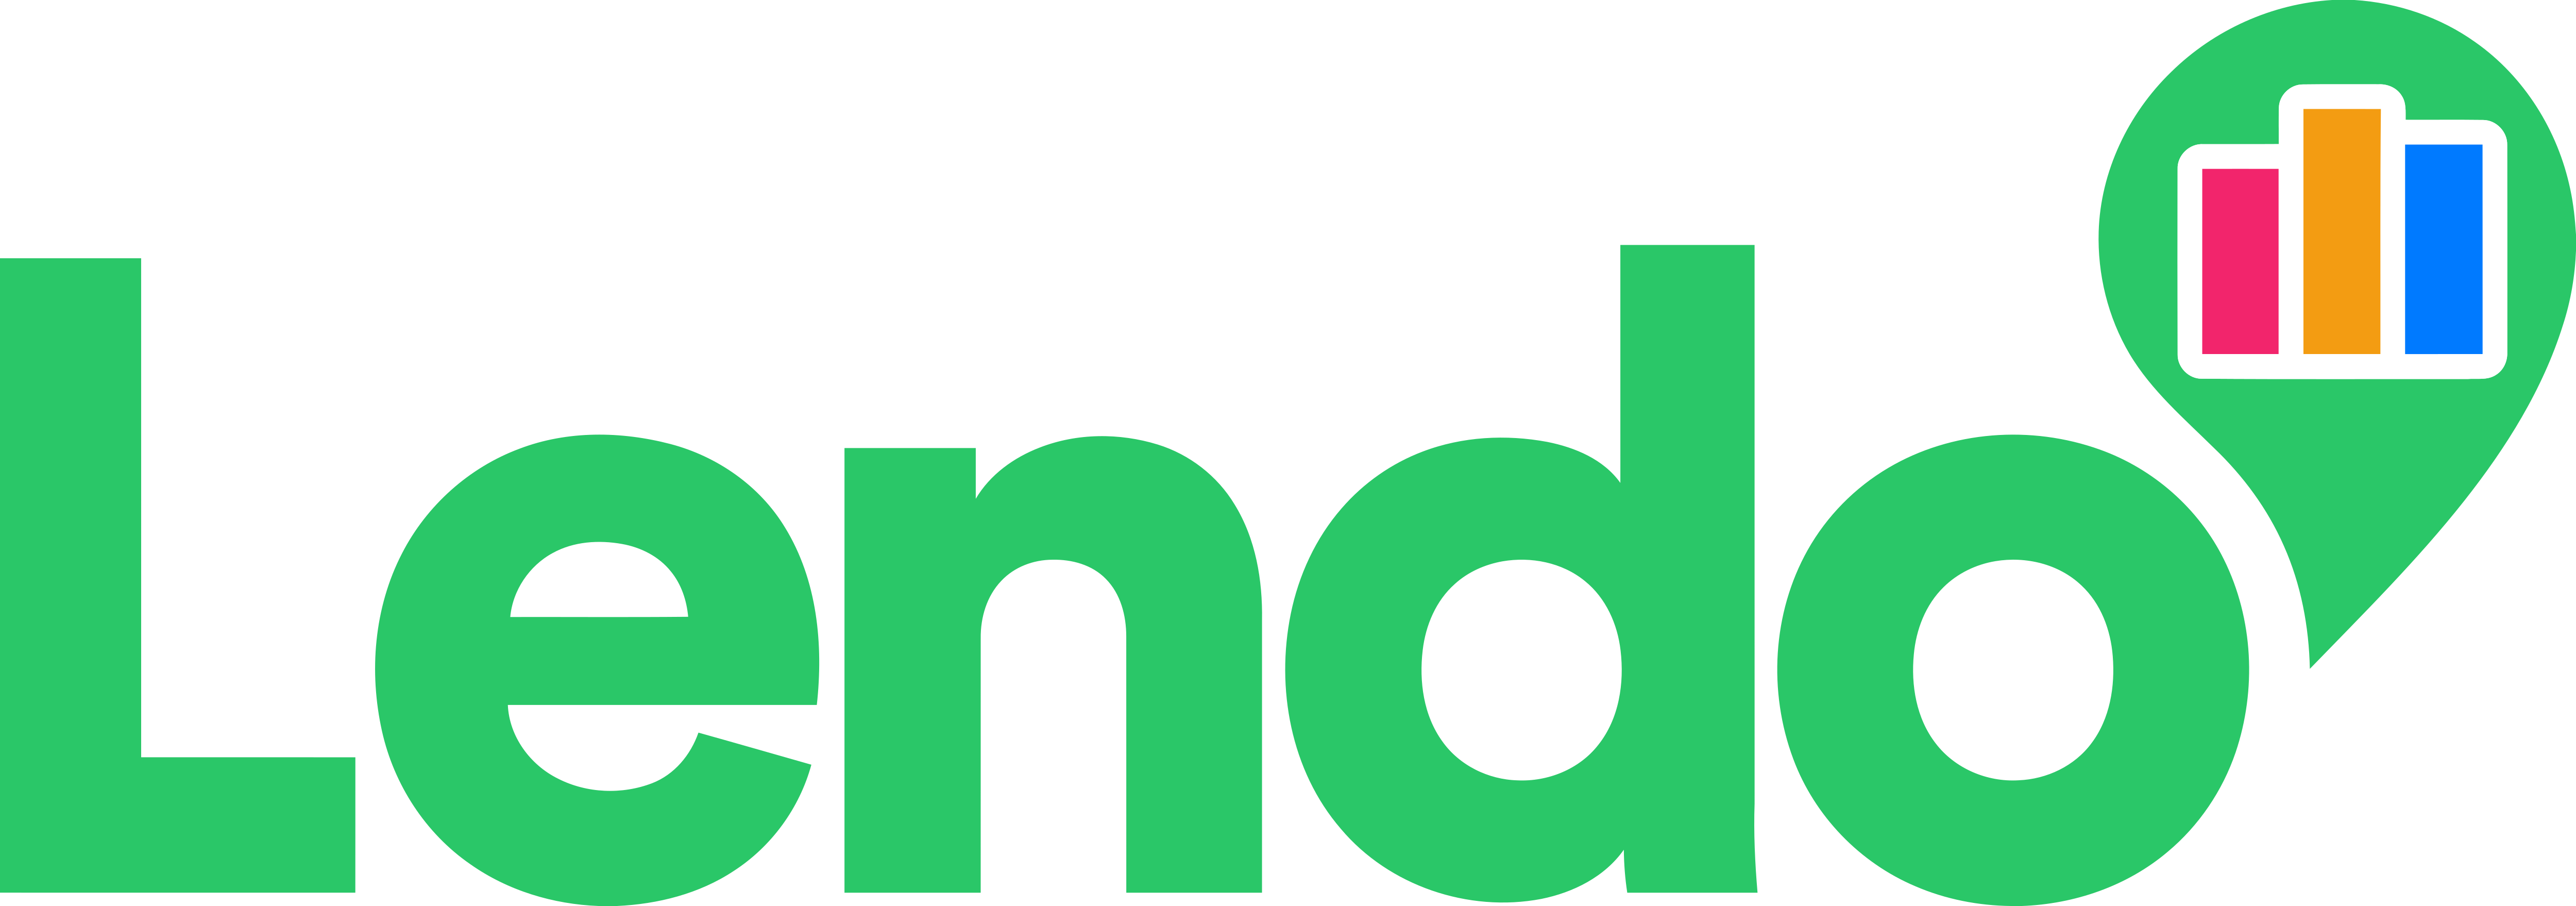 Lendo_Logo